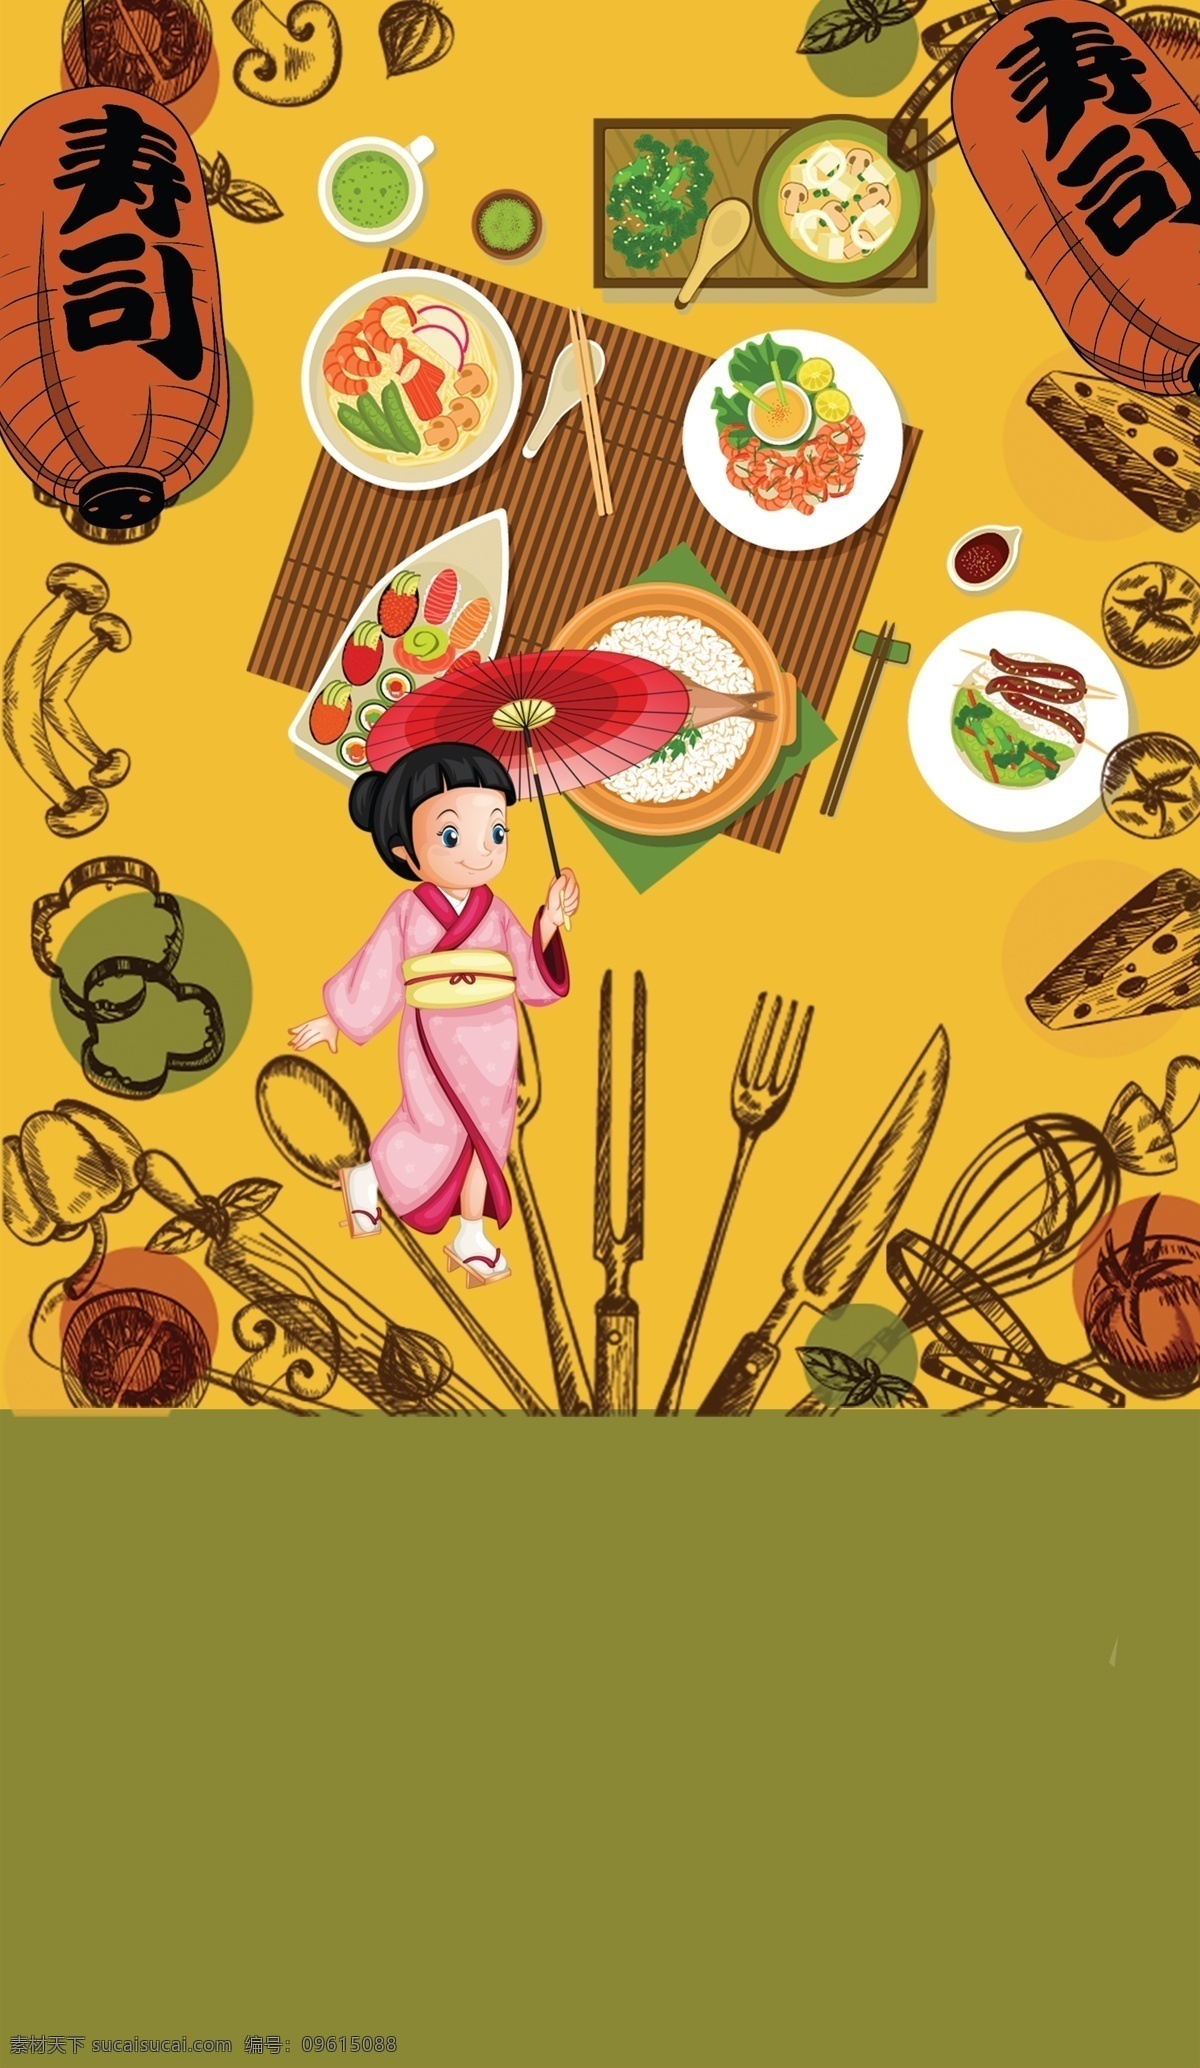 创意 卡通 日本料理 美食 海报 创意海报 卡通海报 料理店 美食海报下载 美味 美味寿司 平面海报 日本菜 日本女人 日式料理 宣传海报